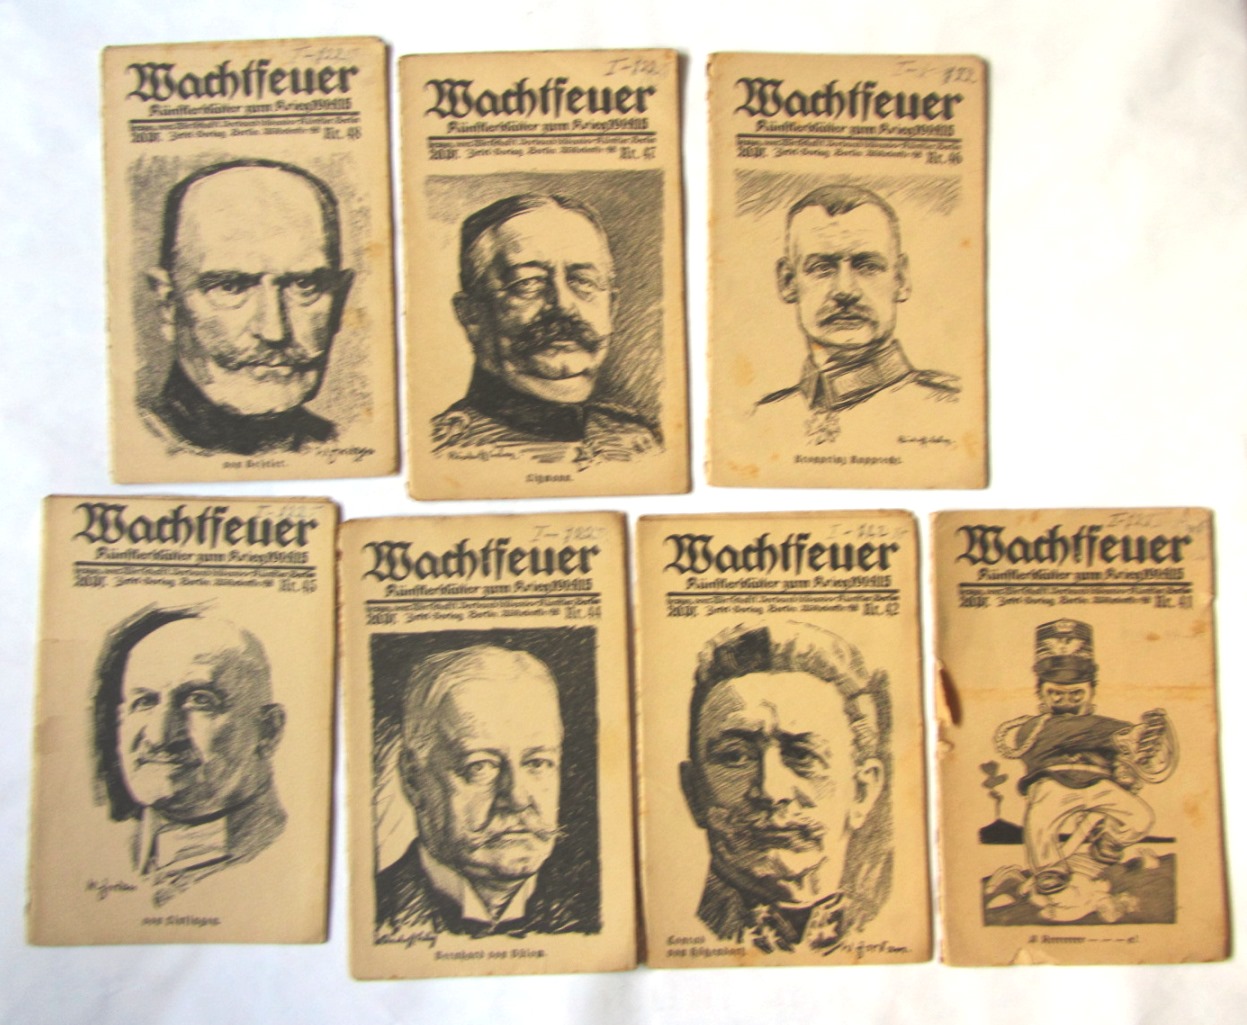   Wachtfeuer. Künstlerblätter zum Krieg 1914/15. 7 Hefte. Nr. 41, 42, 44-48.  Hrsg. vom Wirtschaftl. Verband bildender Künstler Berlin. 